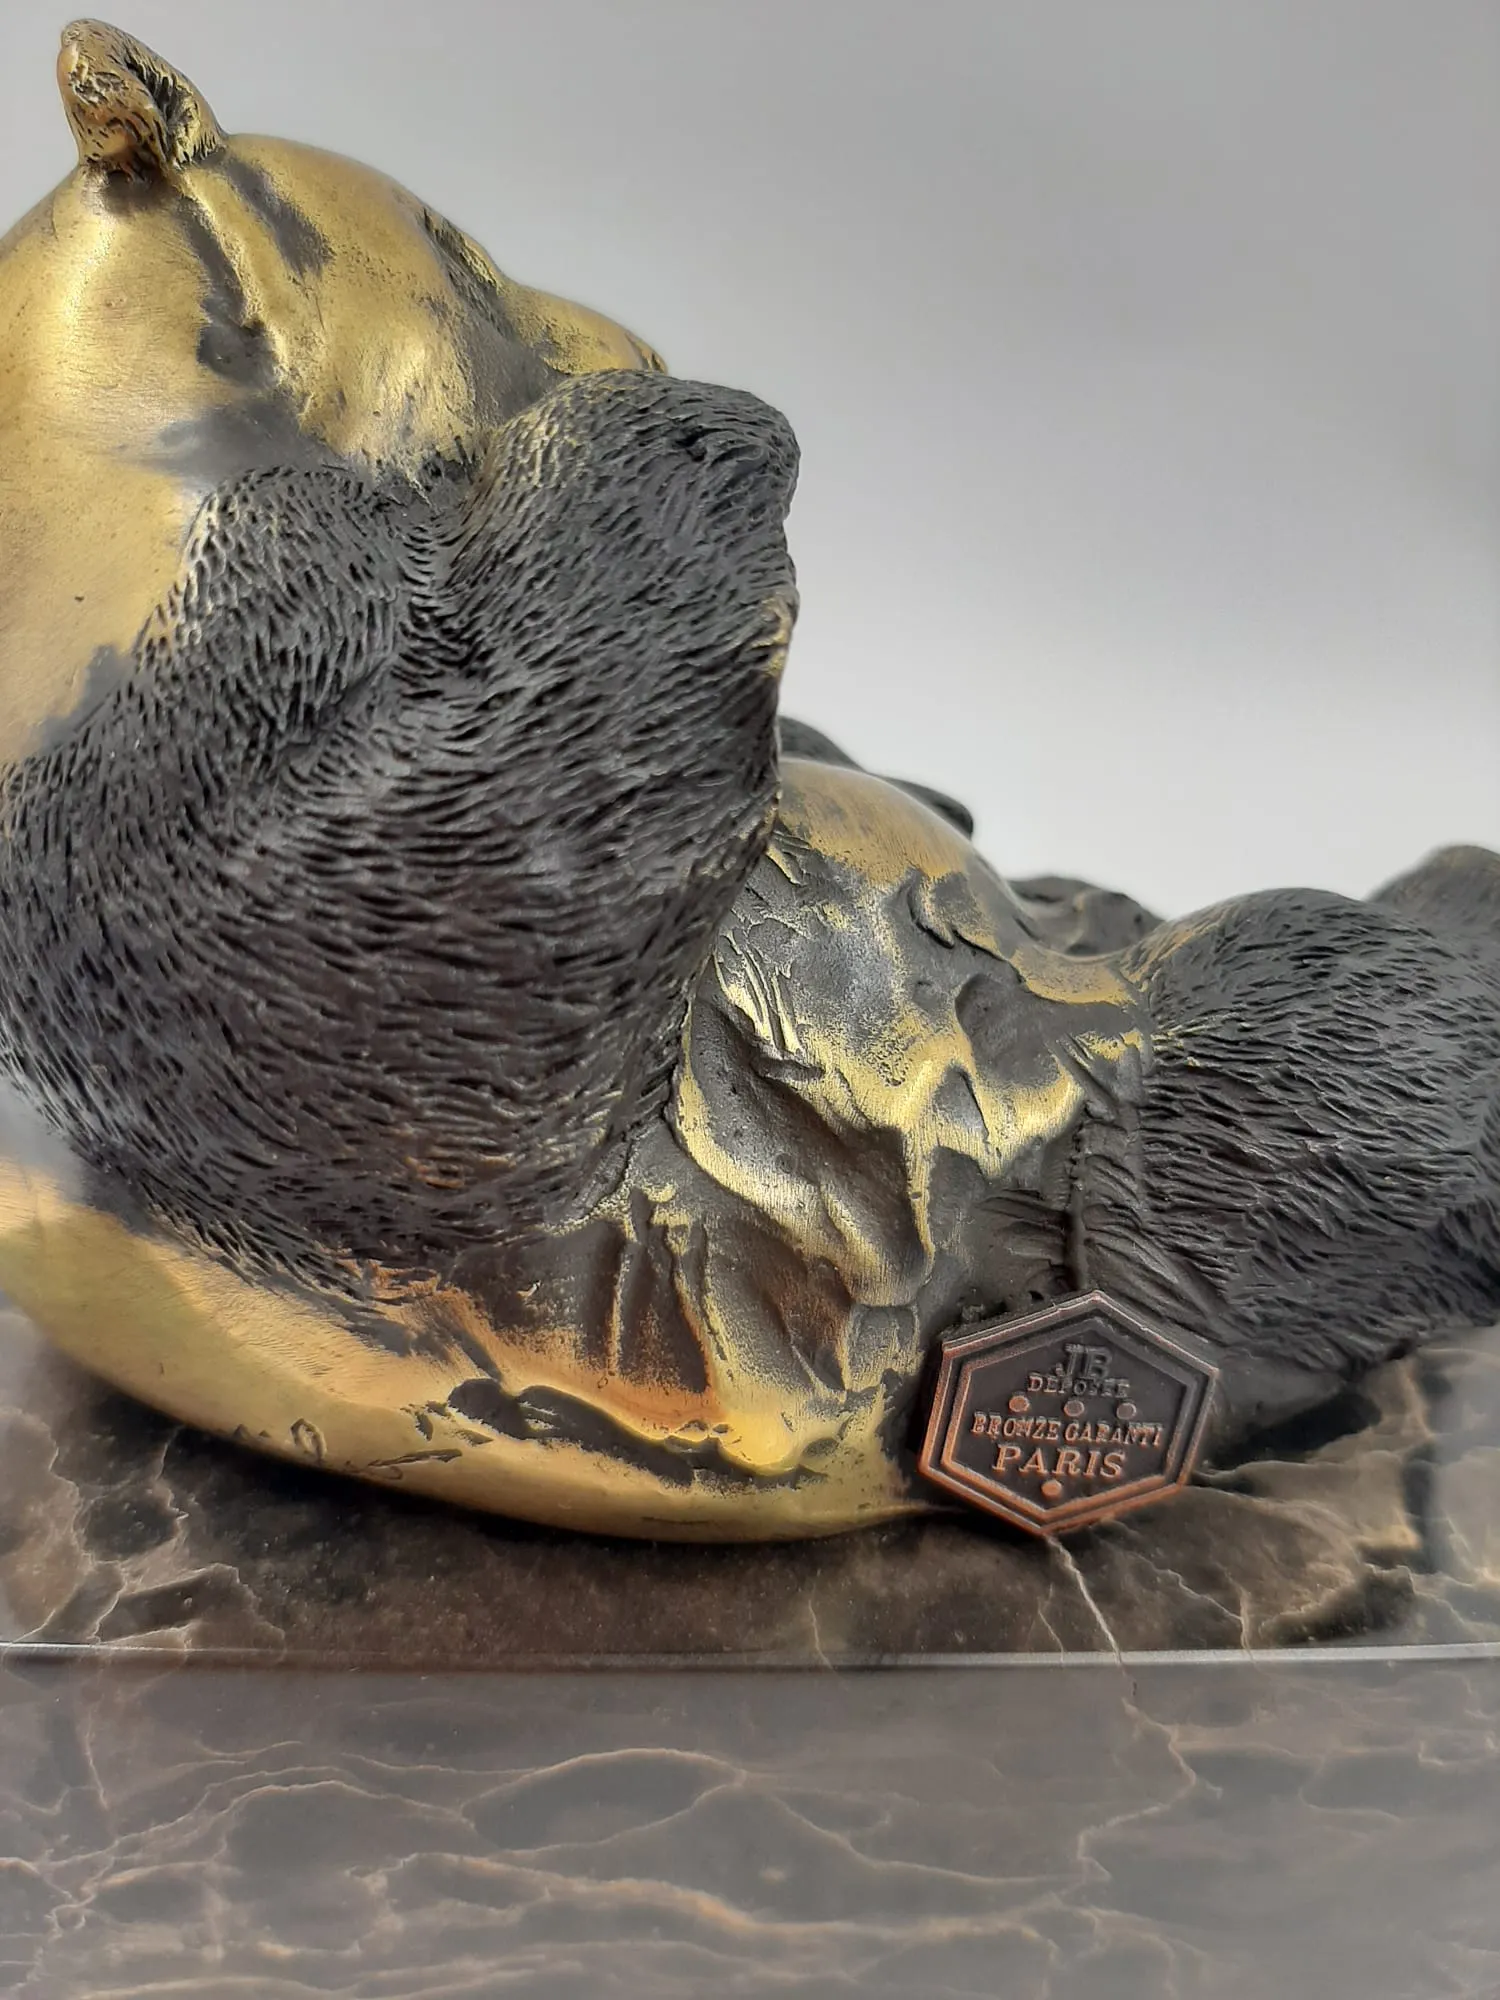 Modern Bronze Sculpture of an Eating Panda